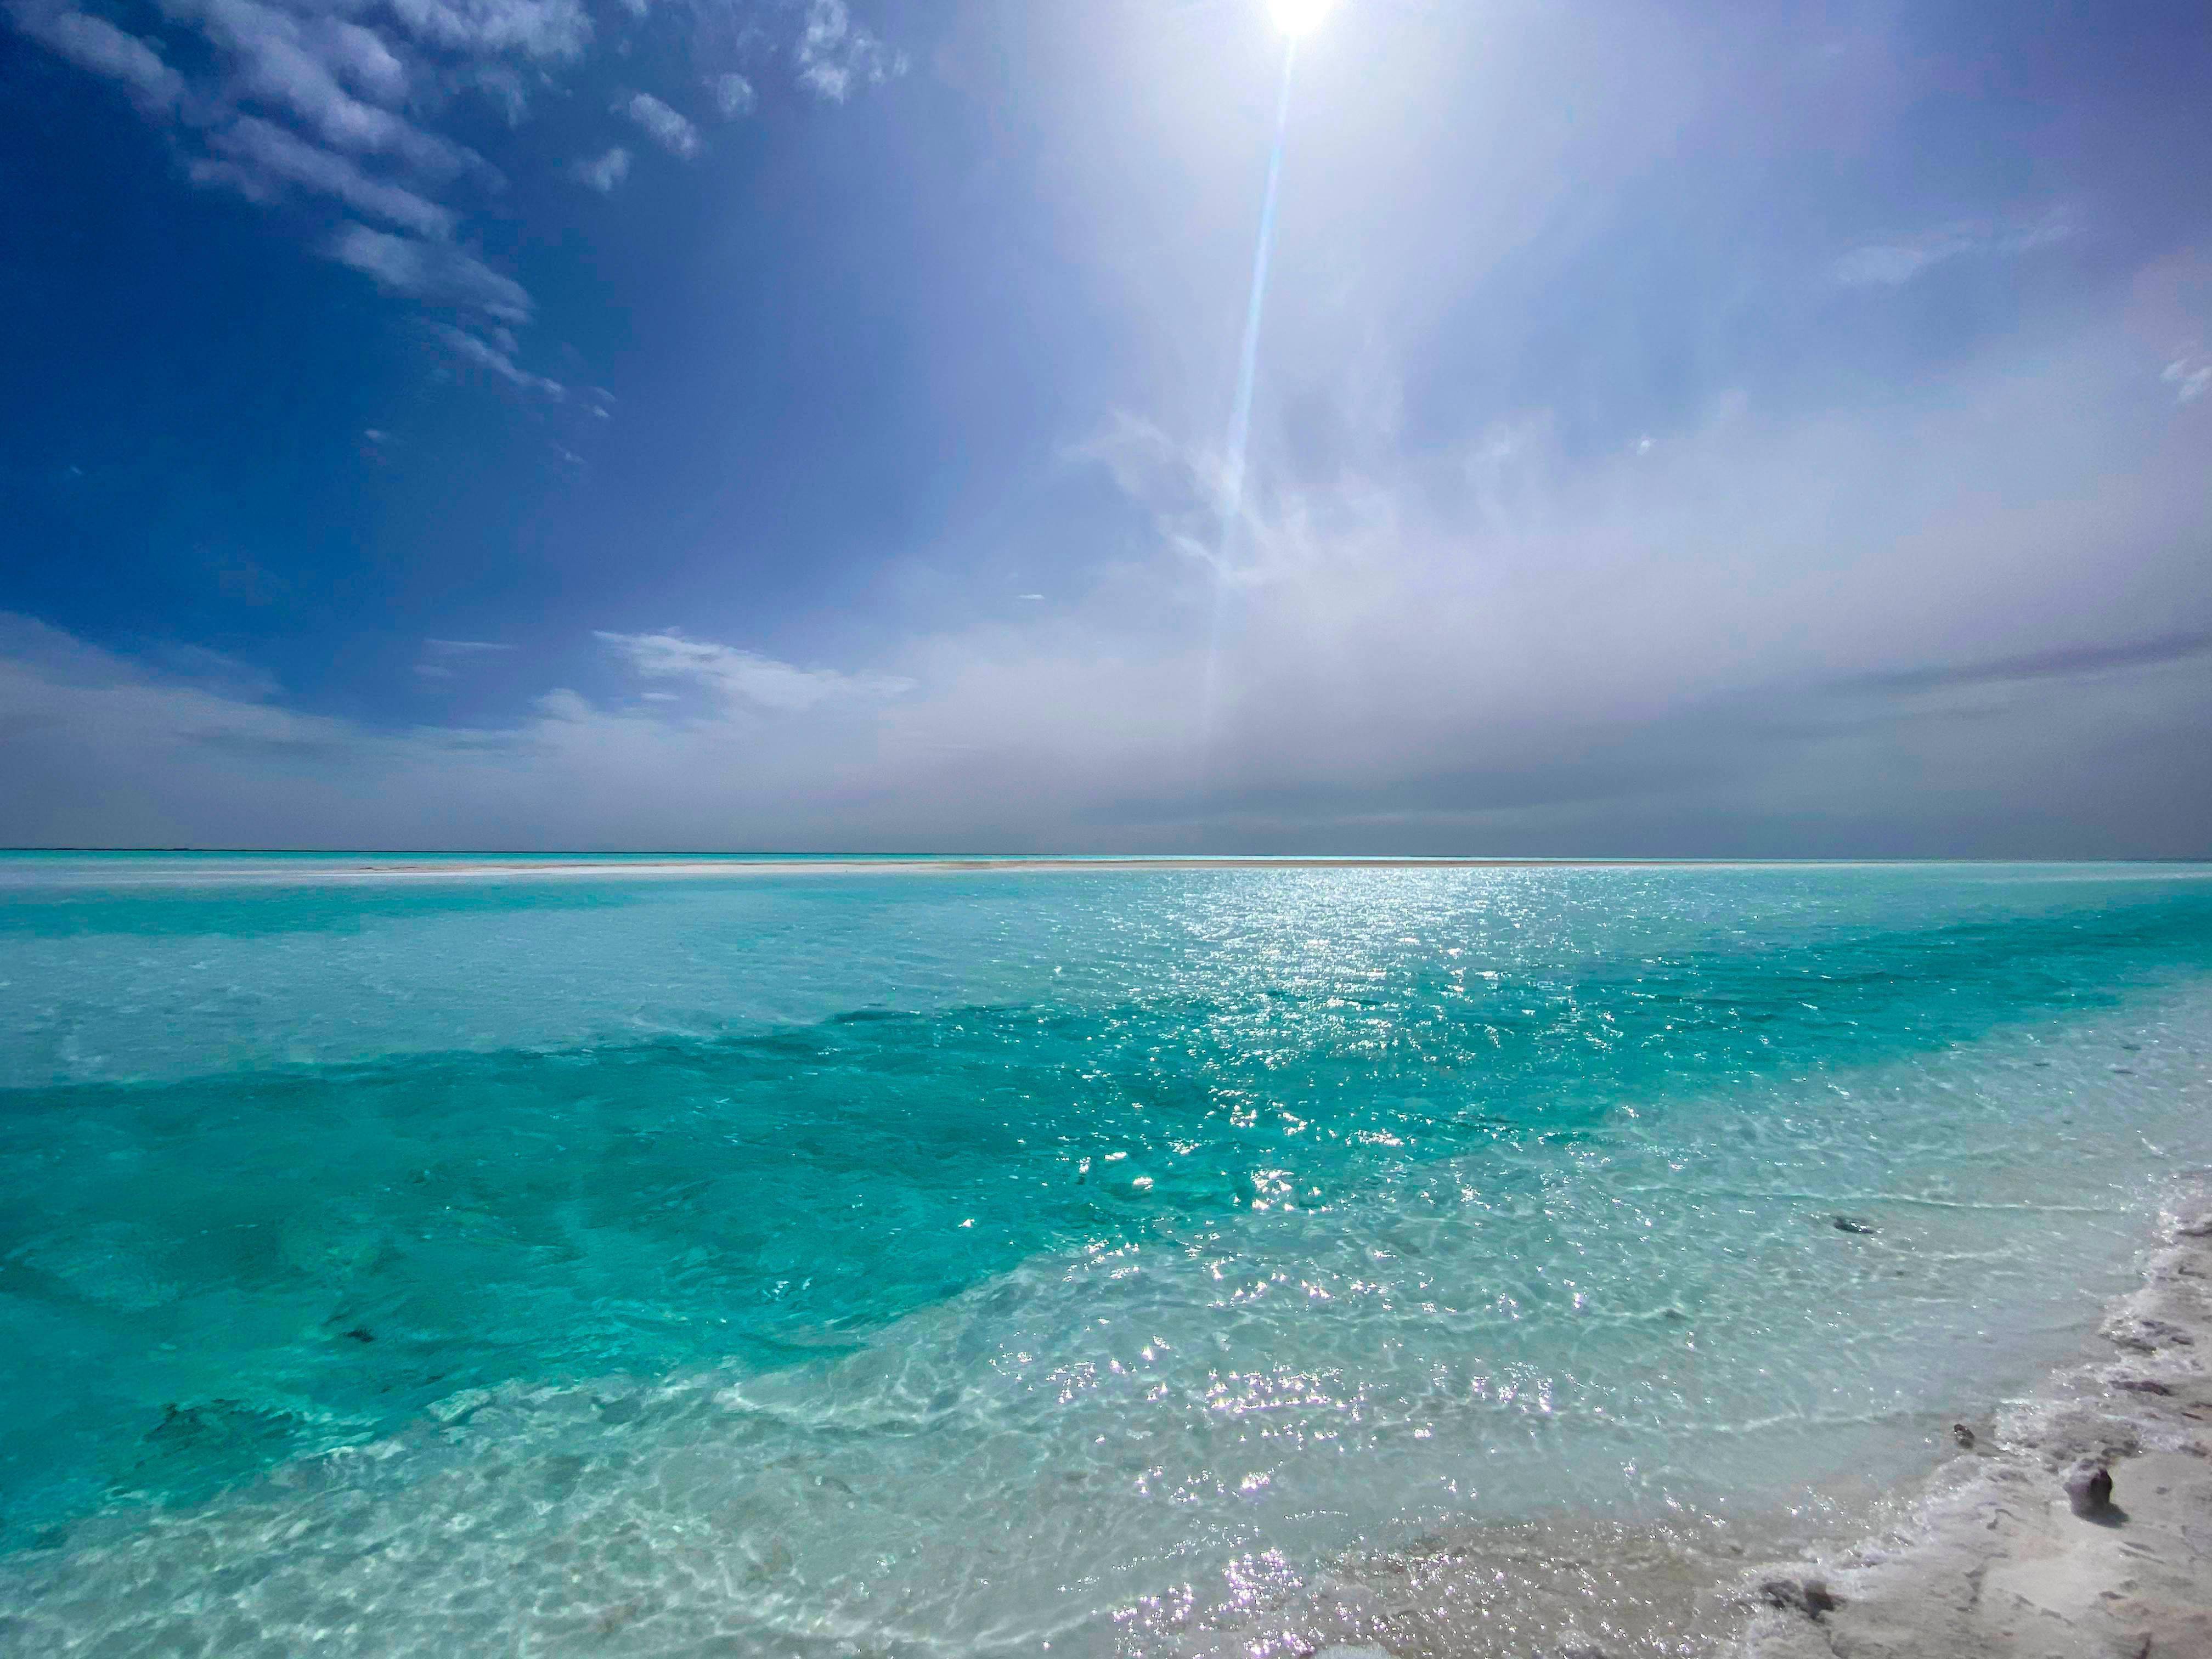 东台吉乃尔湖,纯净湖水,洁白盐沙,被誉为"中国的马尔代夫"